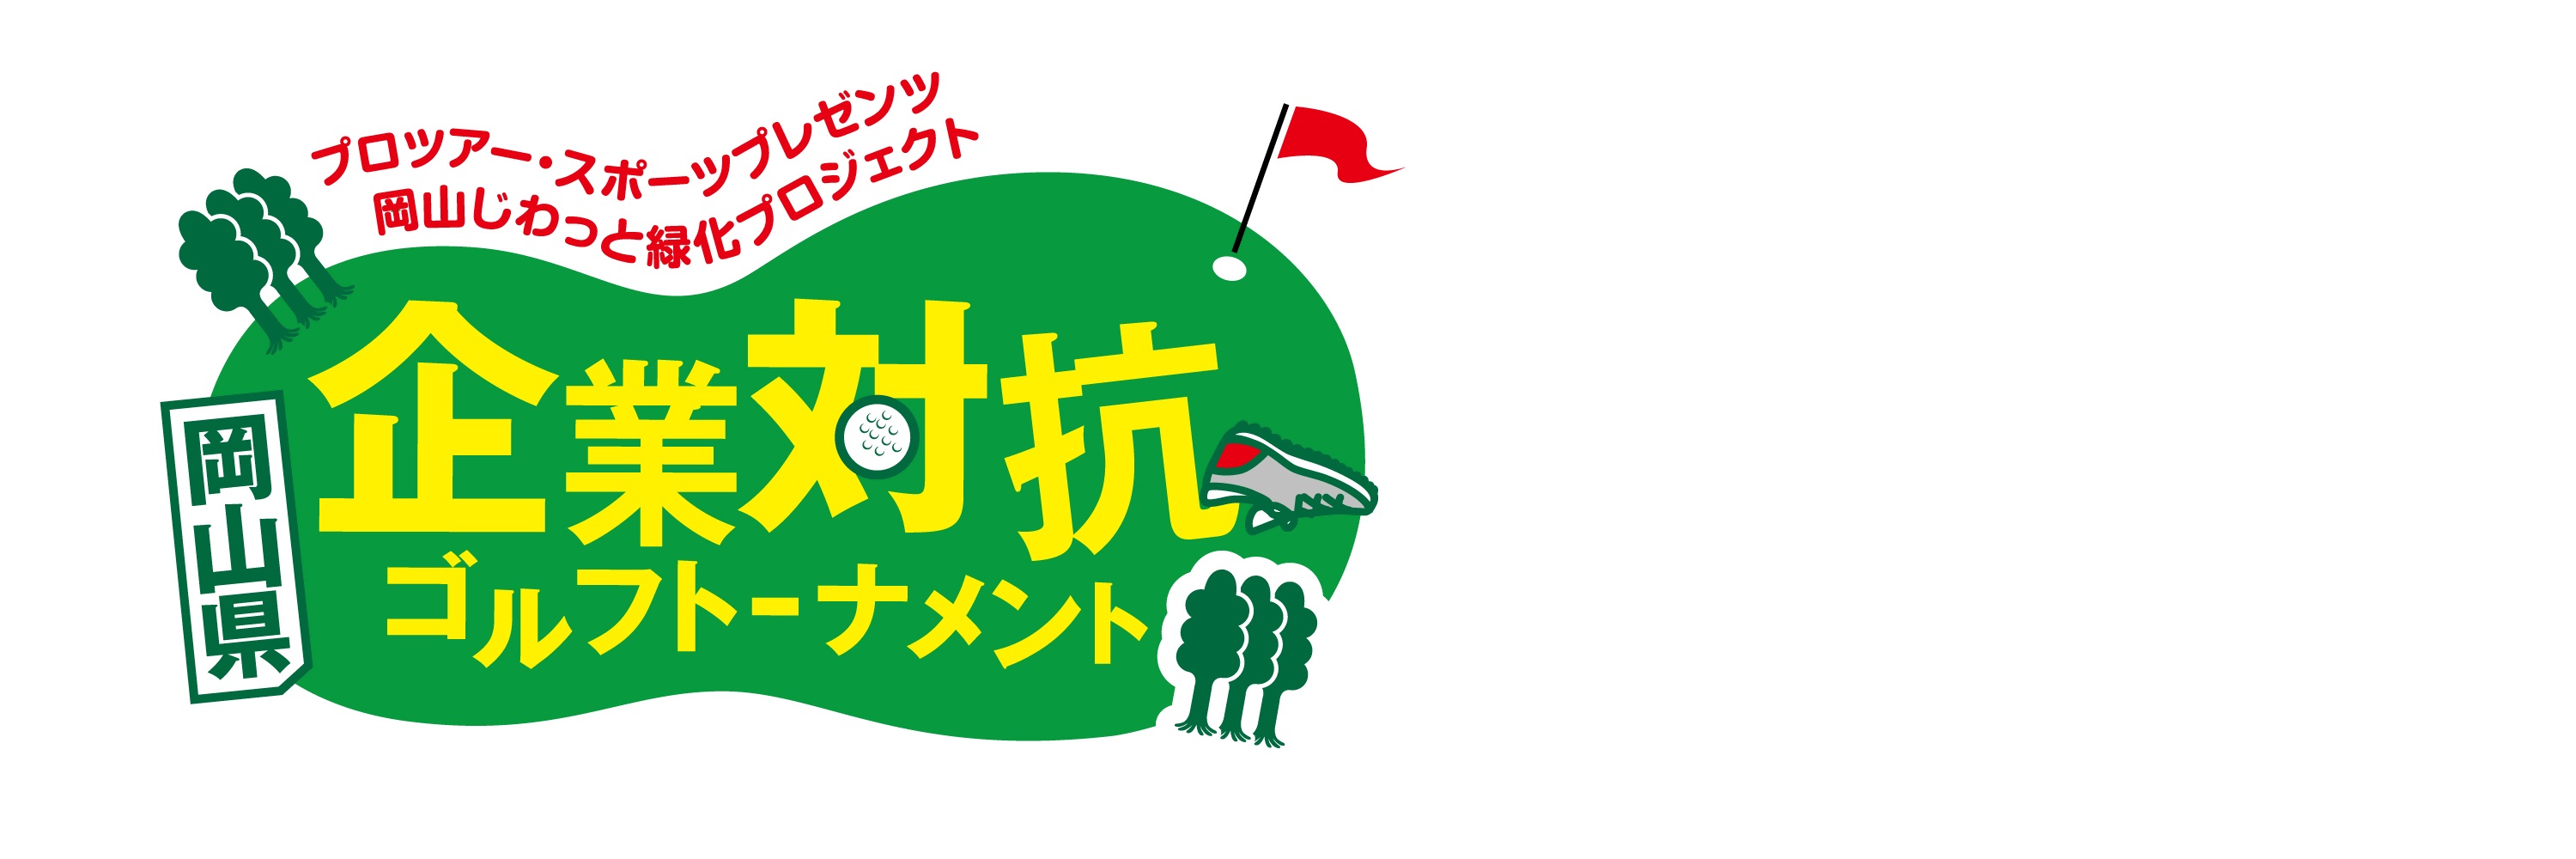 岡山県企業対抗ゴルフトーナメント